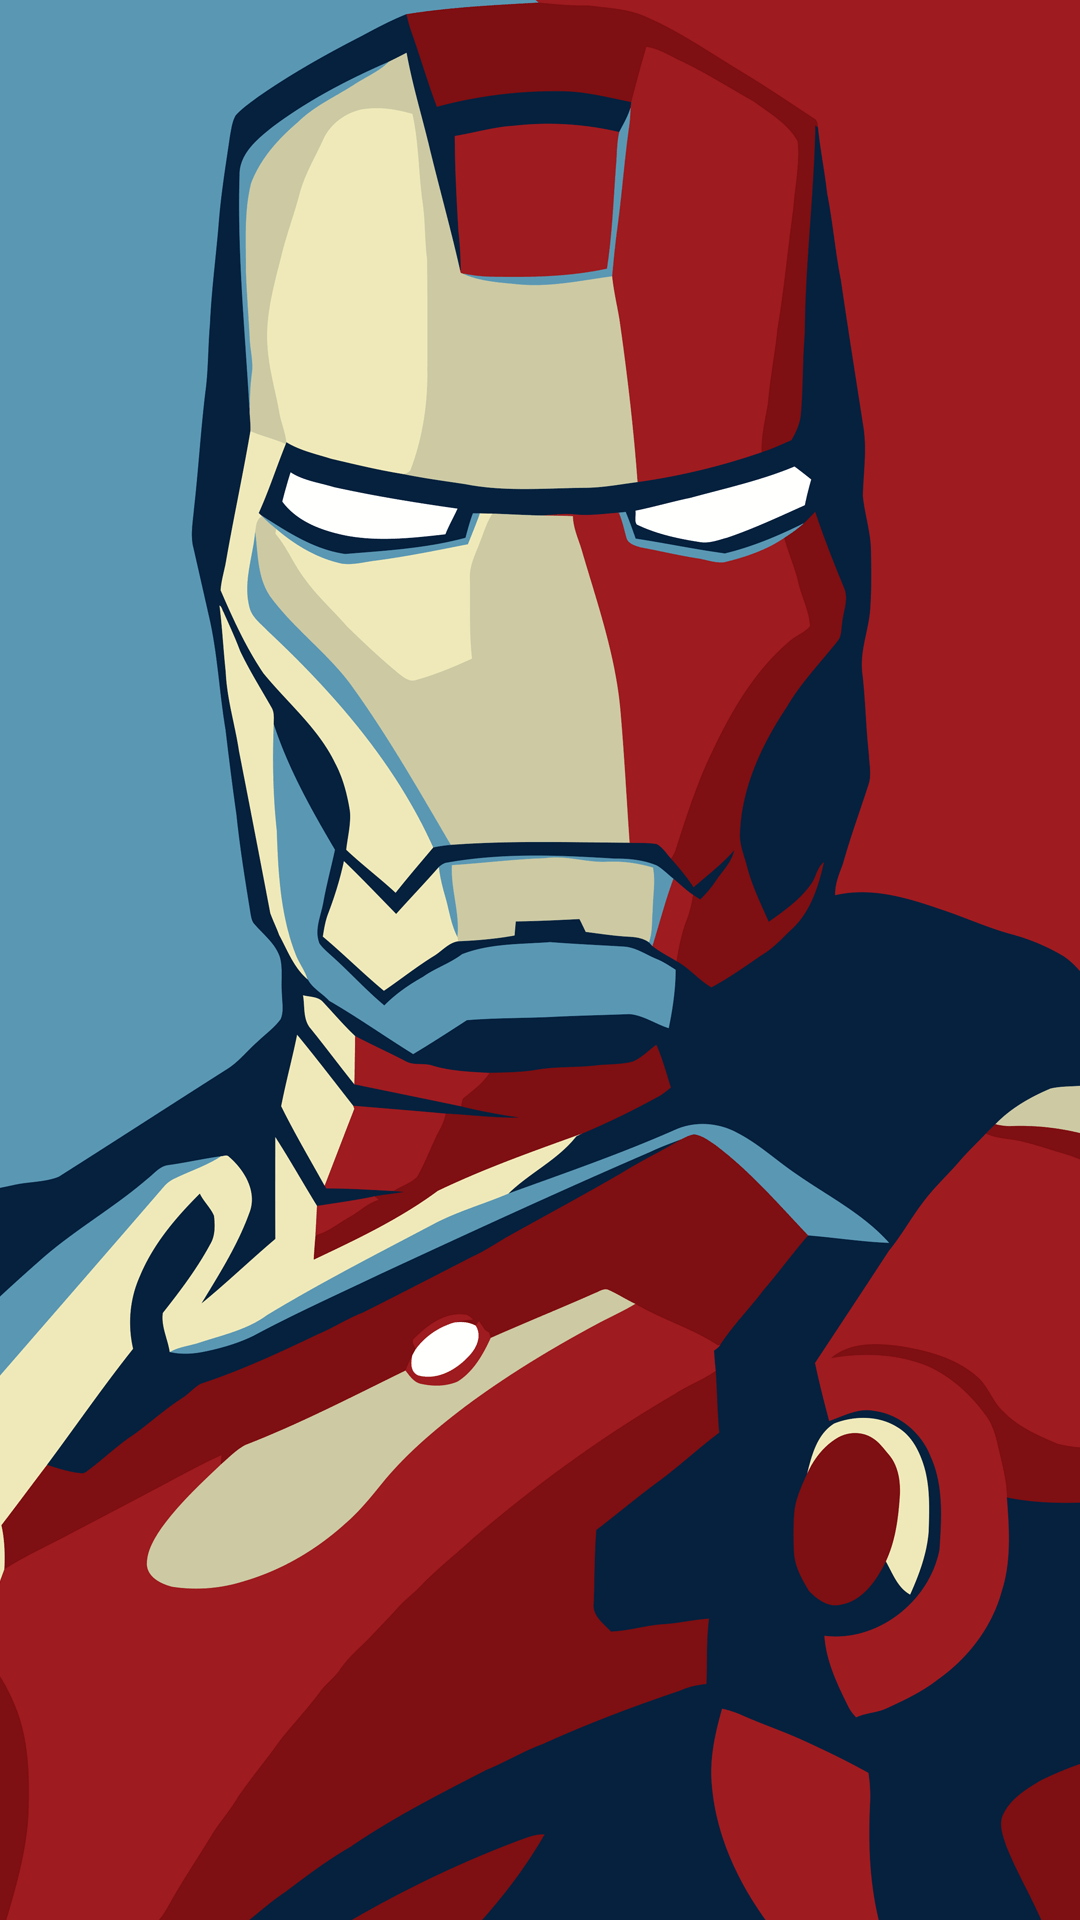 Iron man. Iron man wallpaper, Man